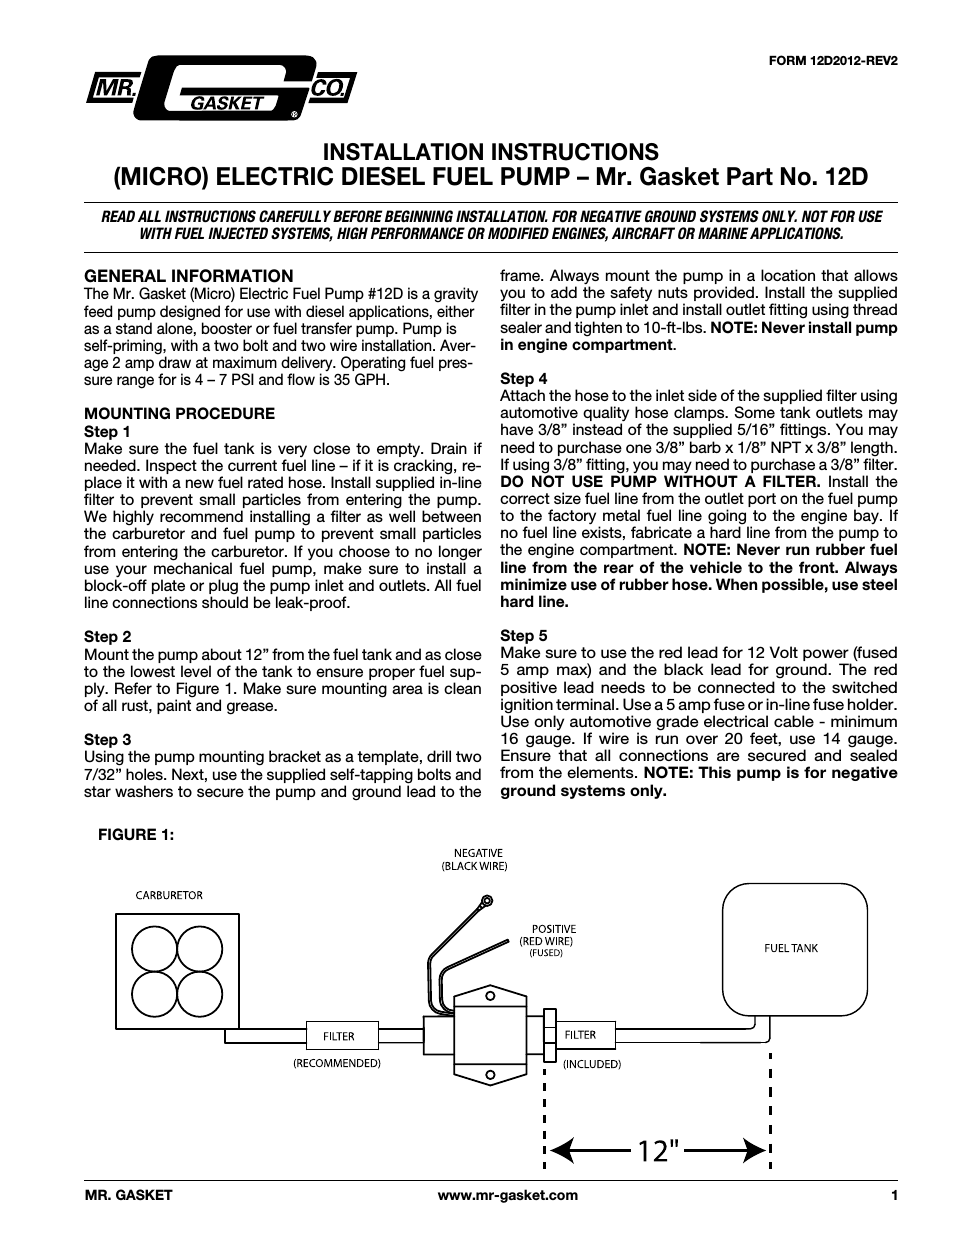 12D Micro Electric Fuel Pump: Diesel